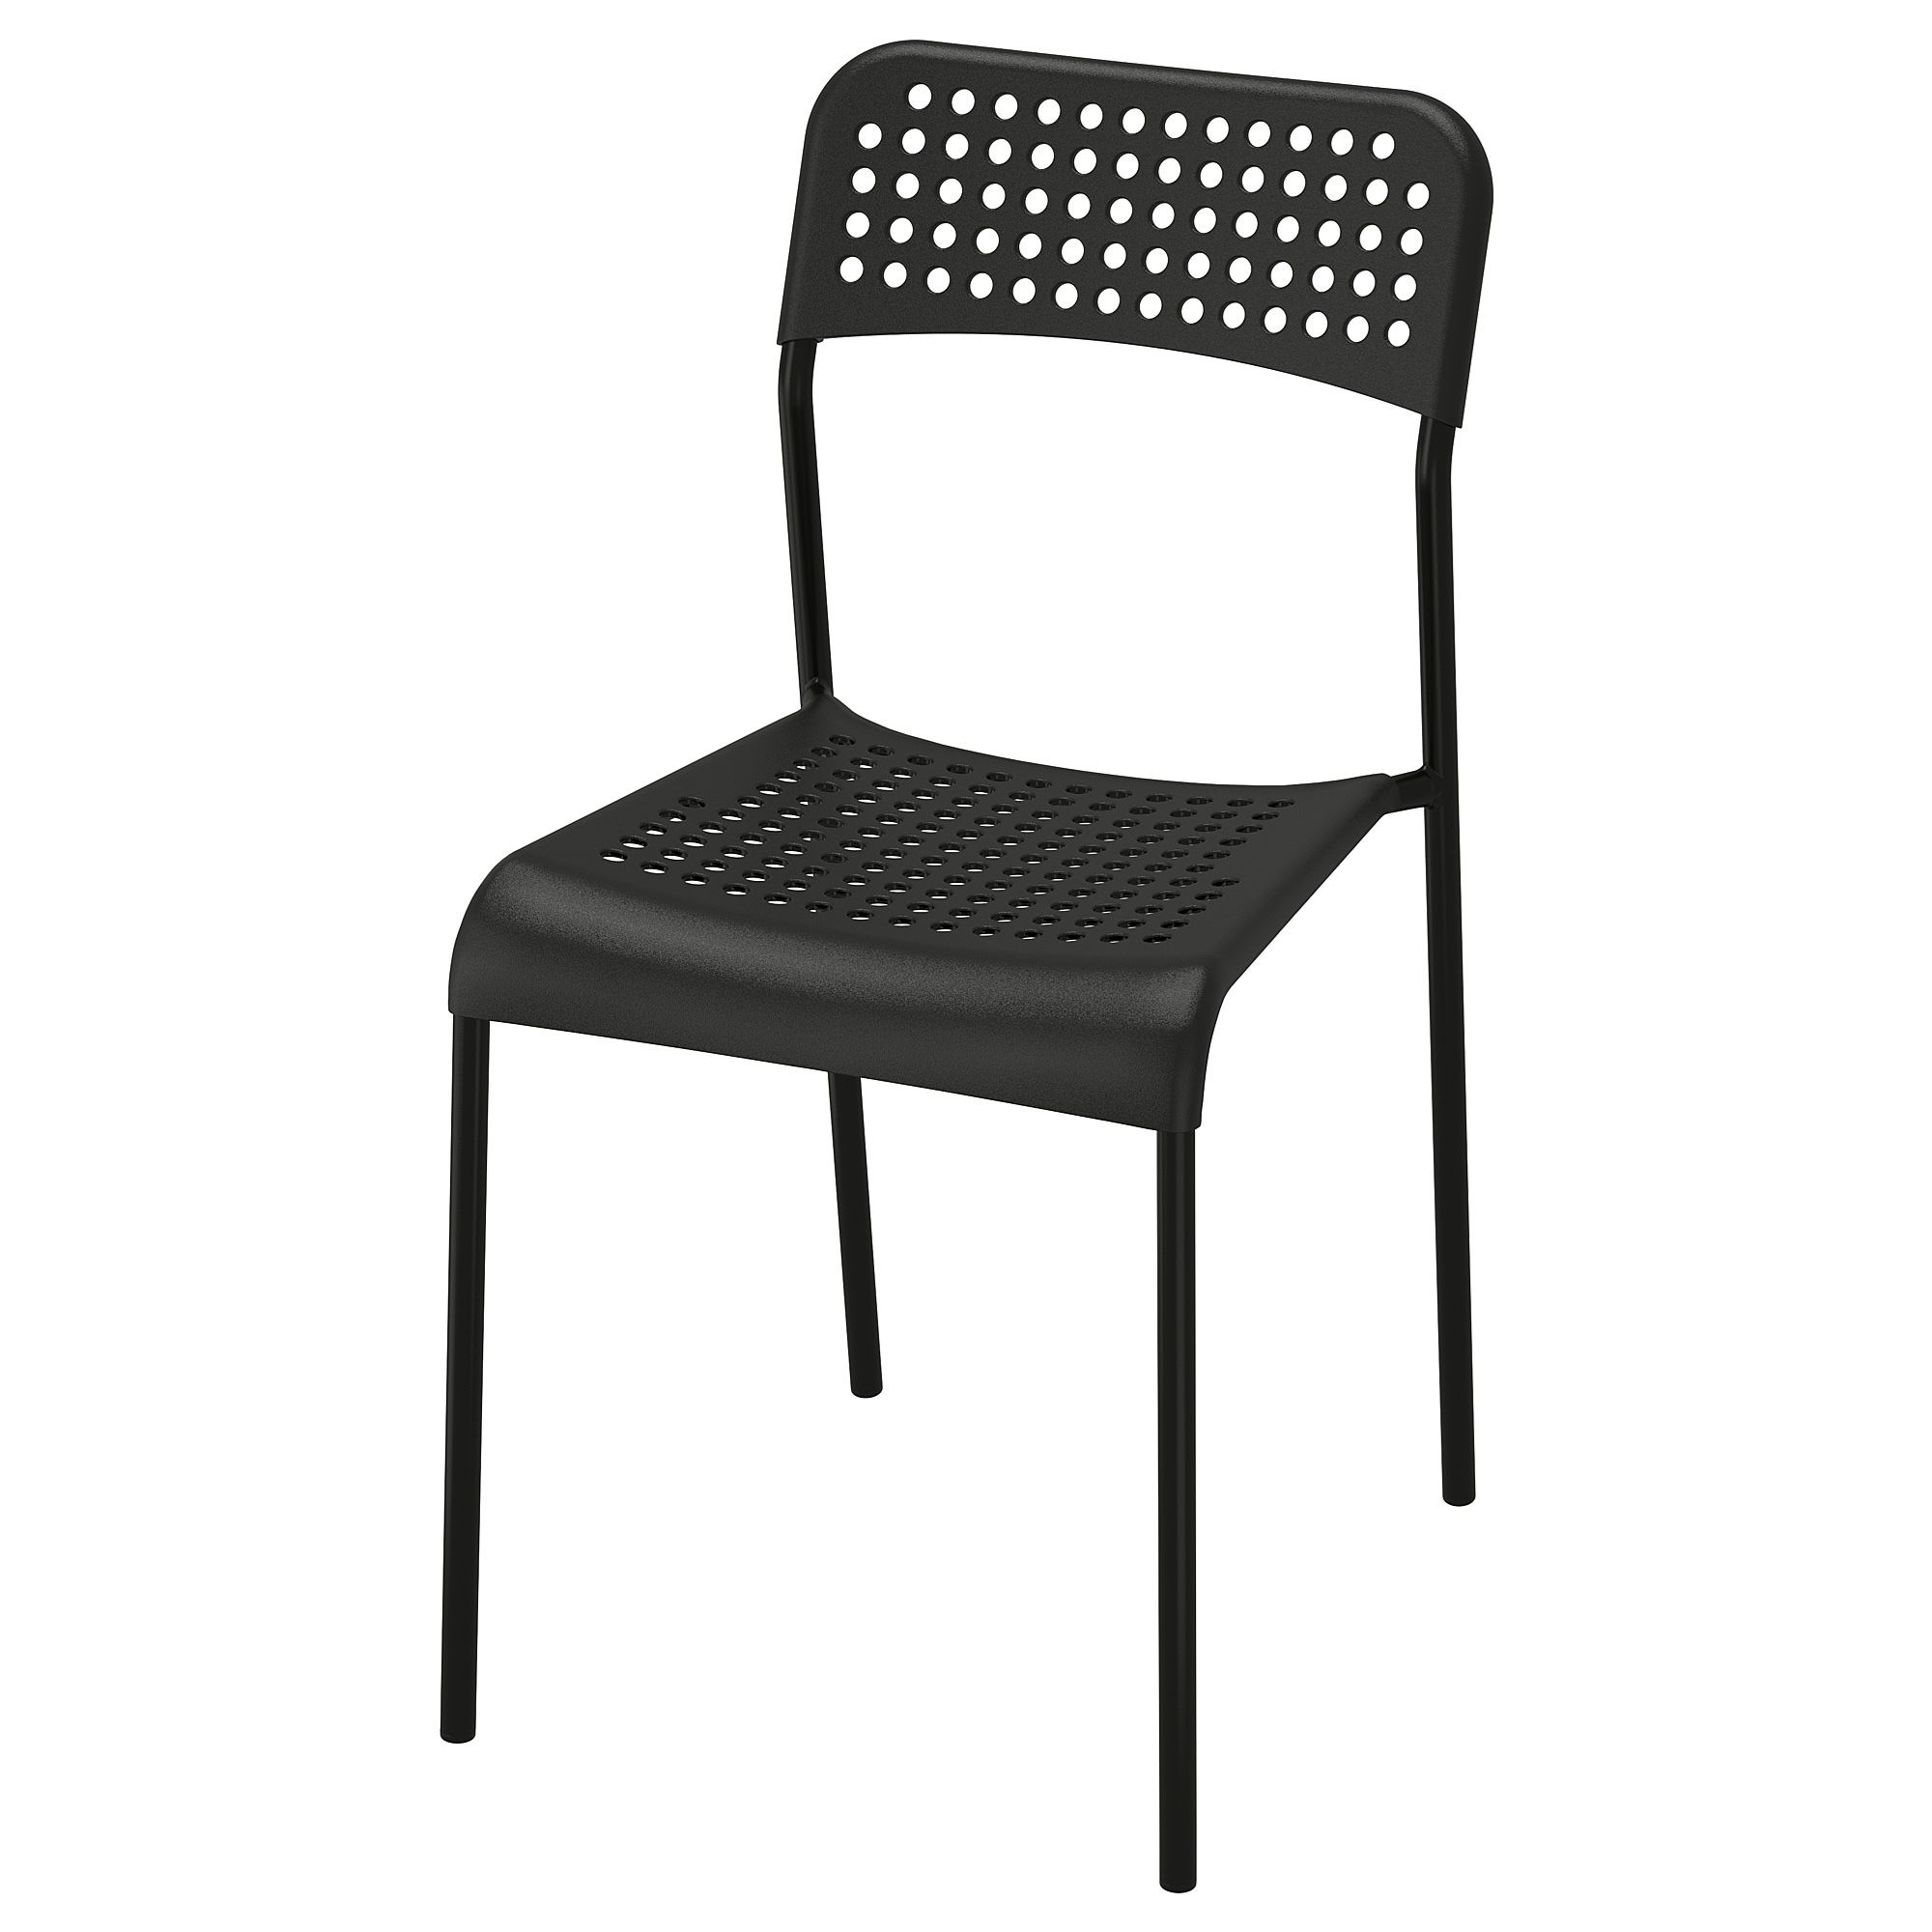 ADDE siyah plastik sandalye  IKEA